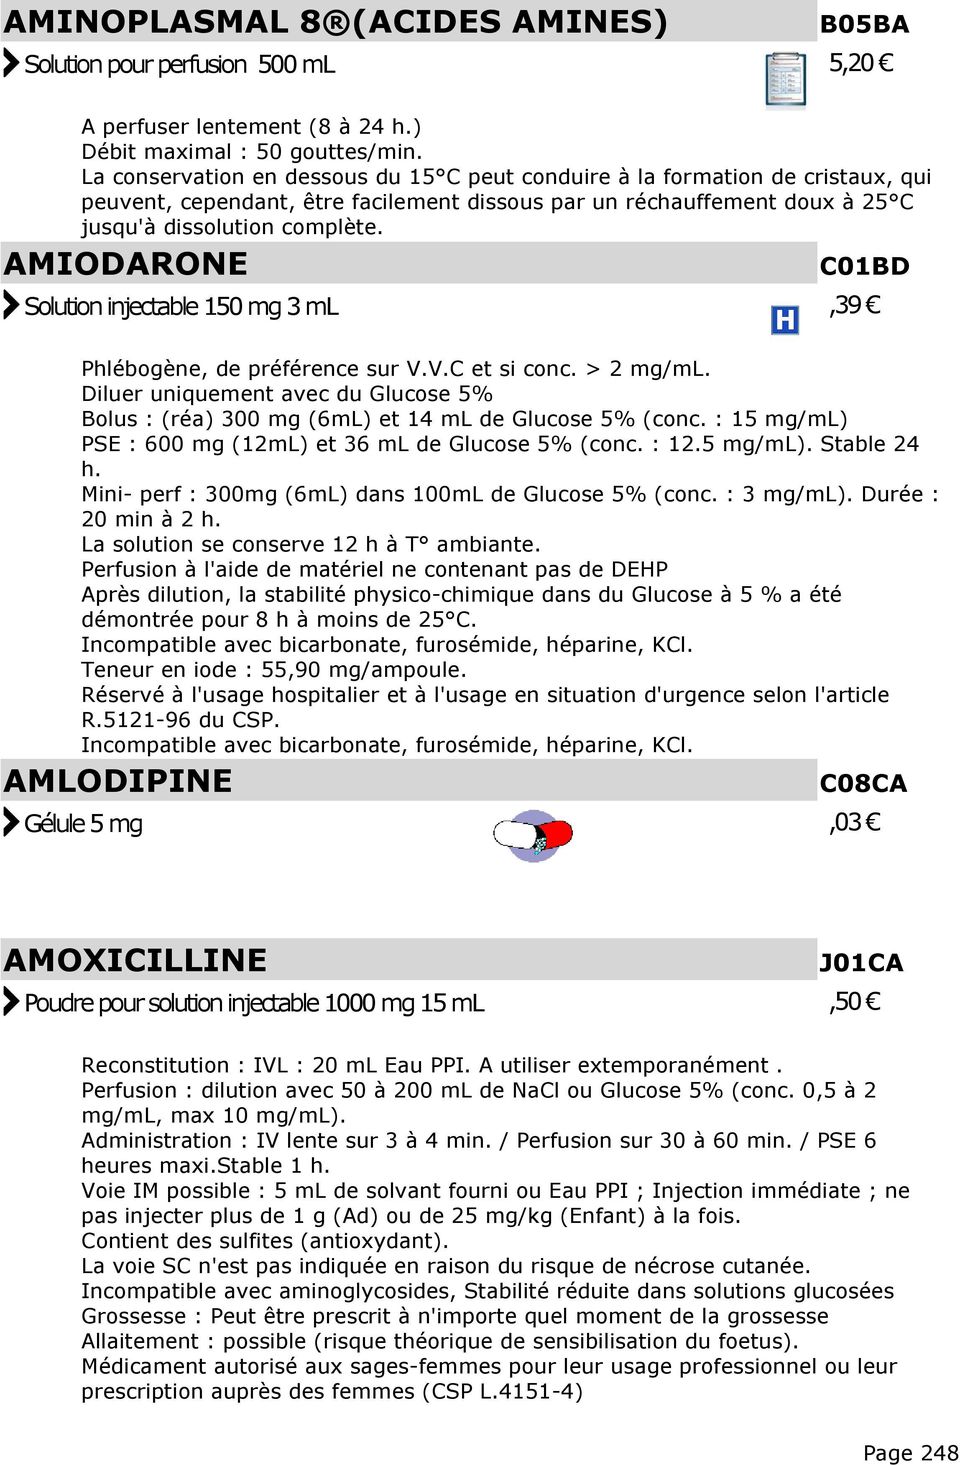 AMIODARONE C01BD Solution injectable 150 mg 3 ml,39 Phlébogène, de préférence sur V.V.C et si conc. > 2 mg/ml.